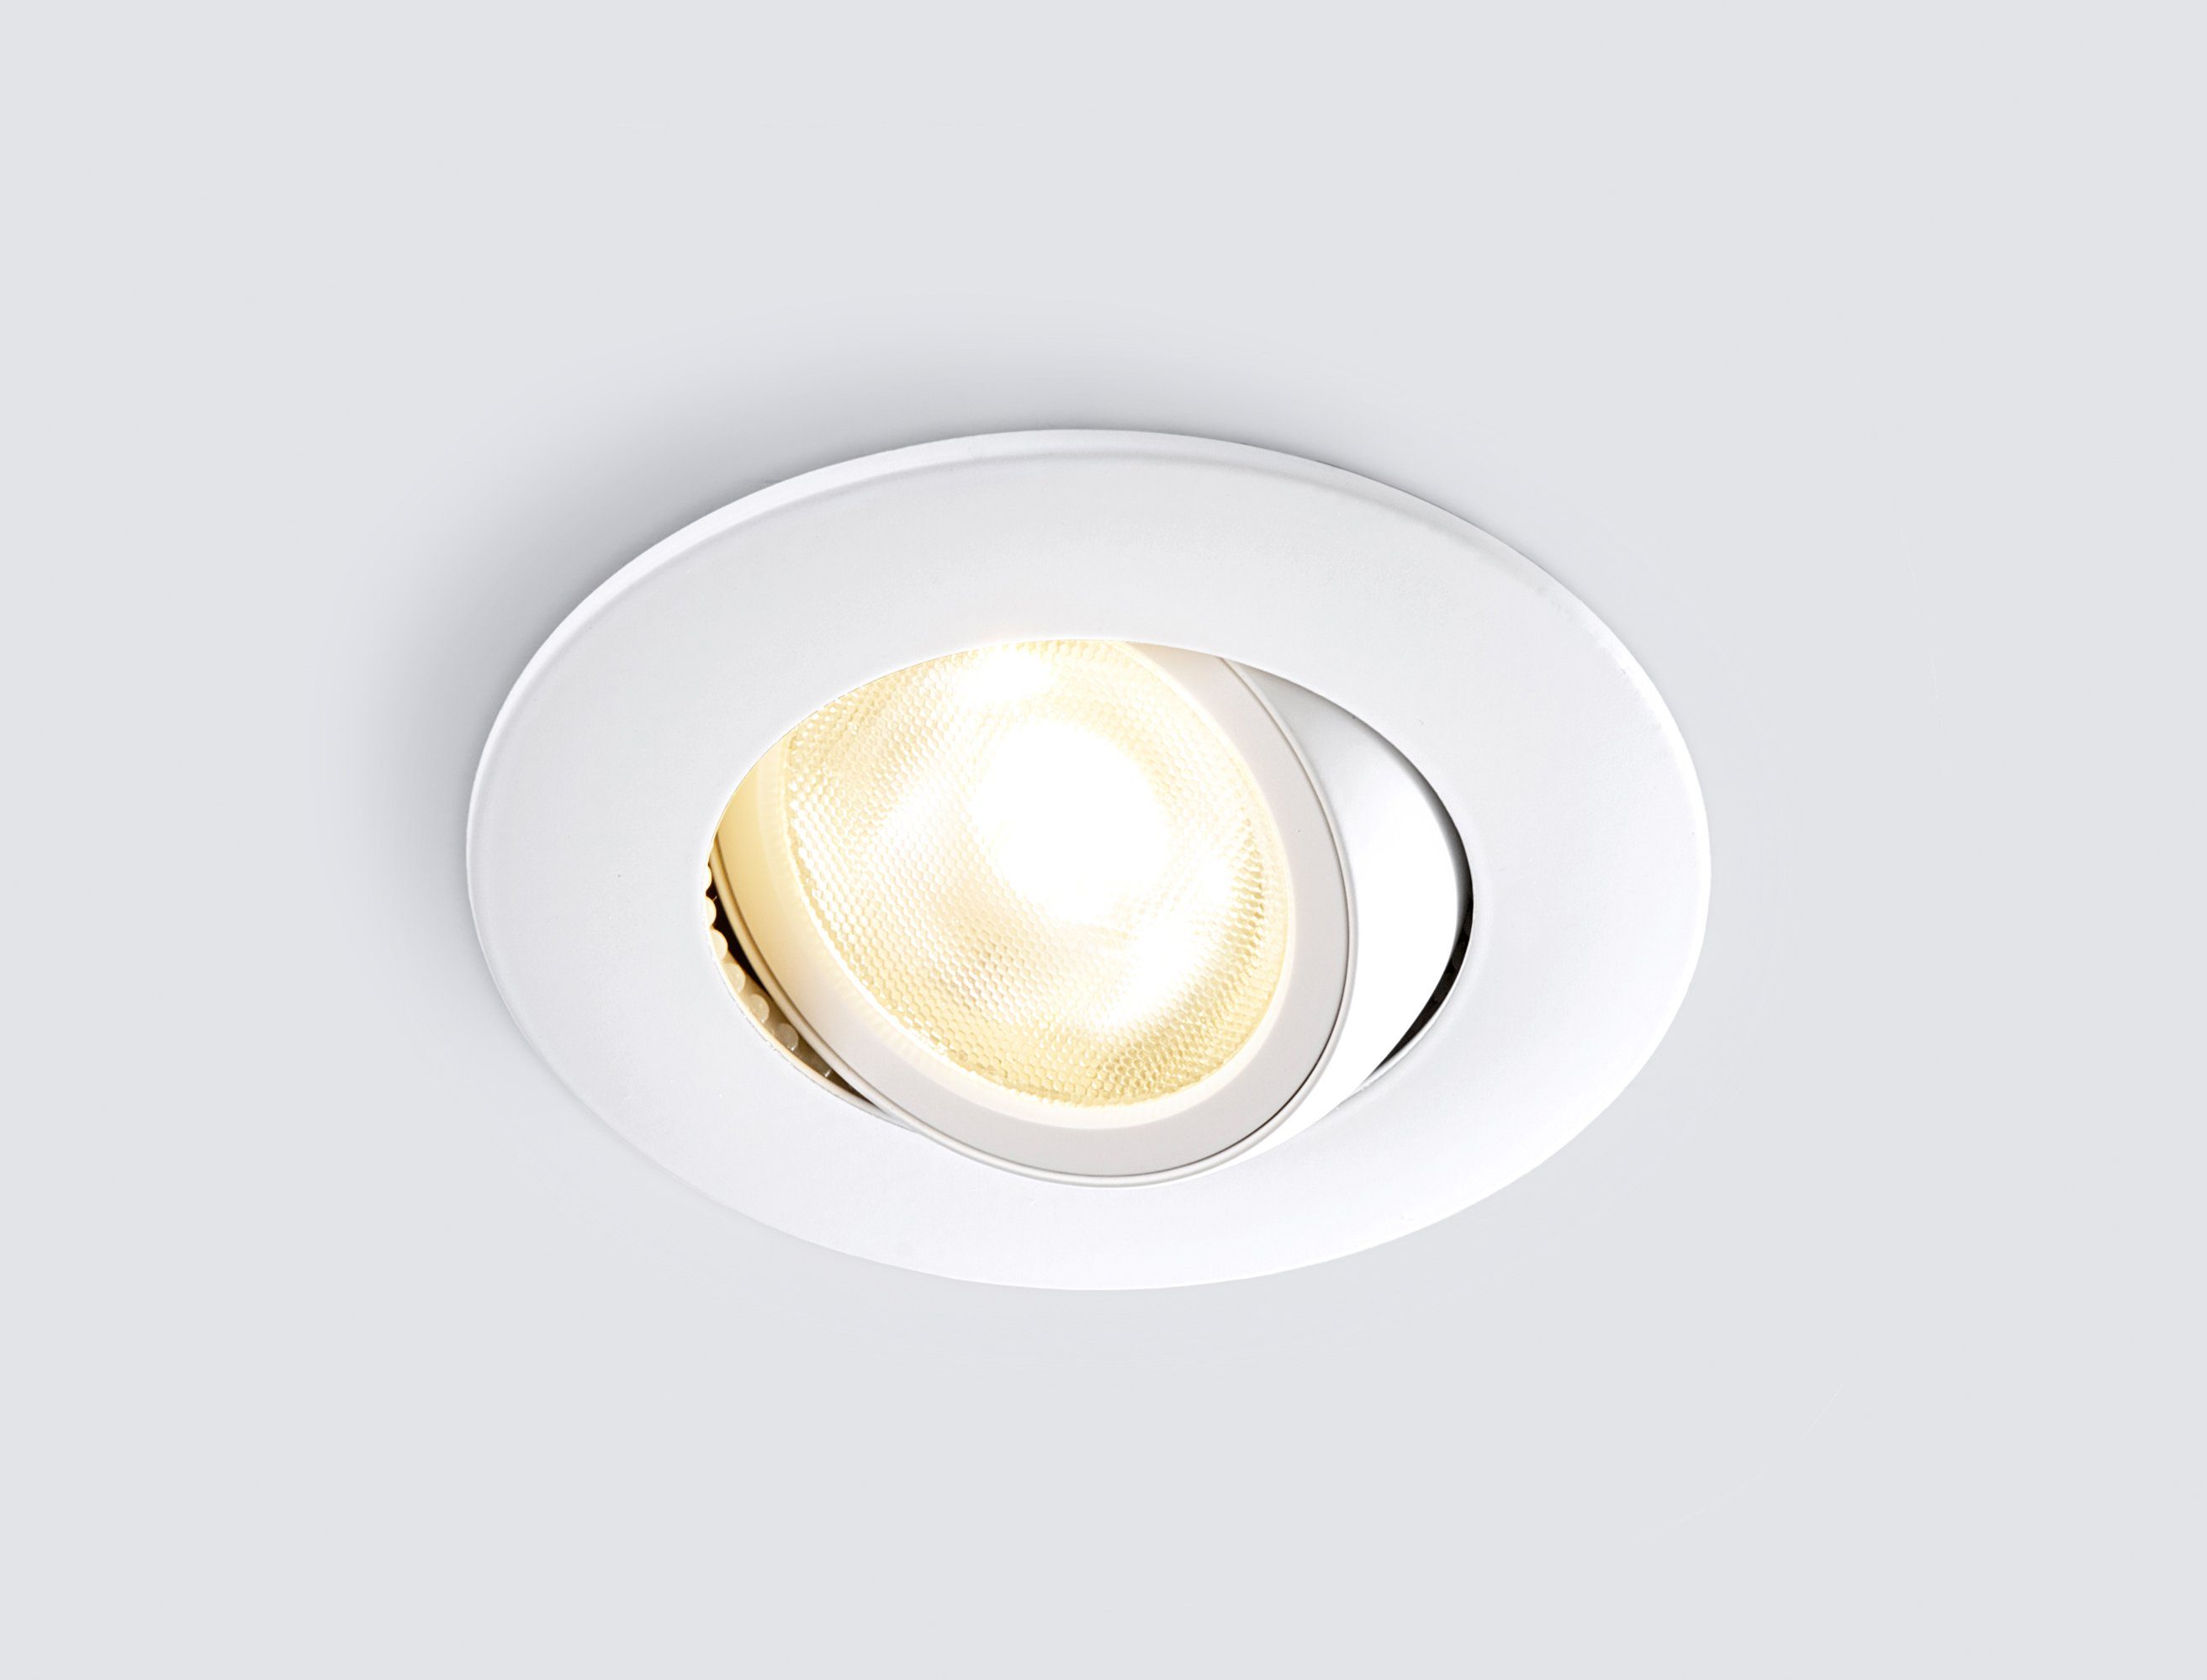 fest LED-Downlight, LED LED Warmweiß, schwenk- integriert, Einbauleuchte, HEITRONIC und Einbaulampe, dimmbar Dimmfunktion, DL8002, Einbaustrahler